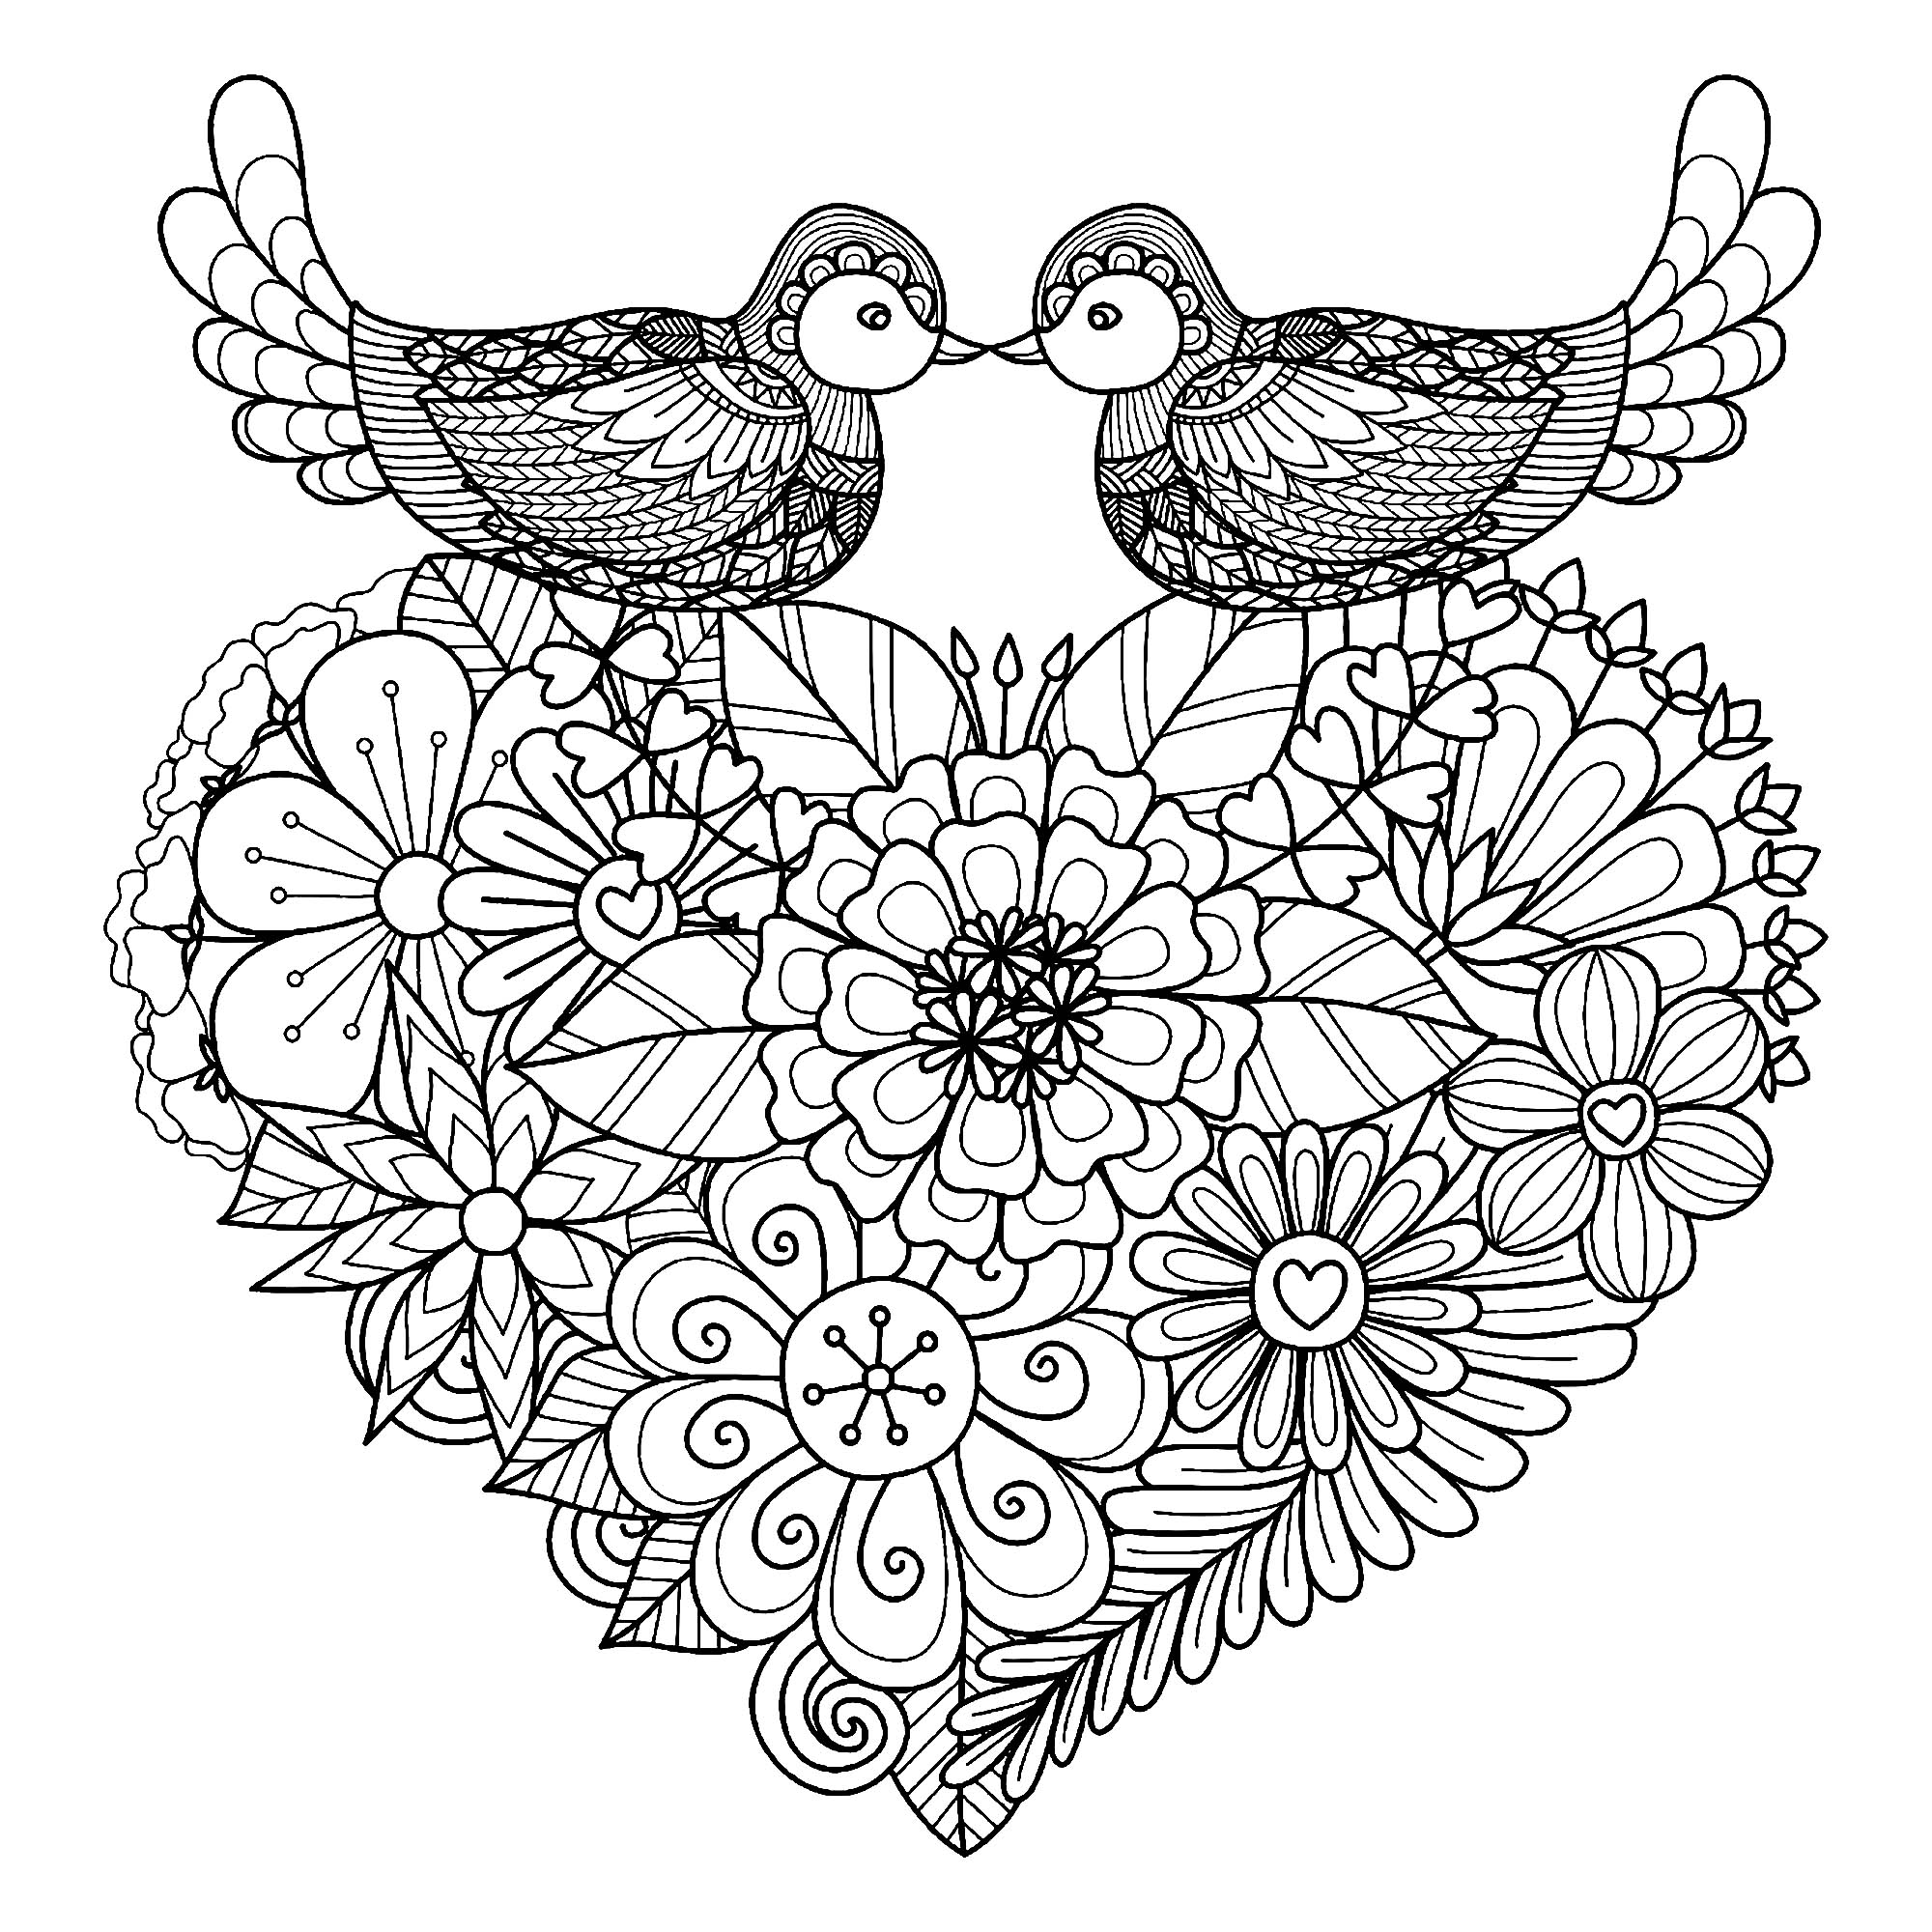 Färbe diese beiden symmetrischen Vögel, die auf einem Herz voller origineller Blumen ruhen, Künstler : Bimdeedee   Quelle : 123rf